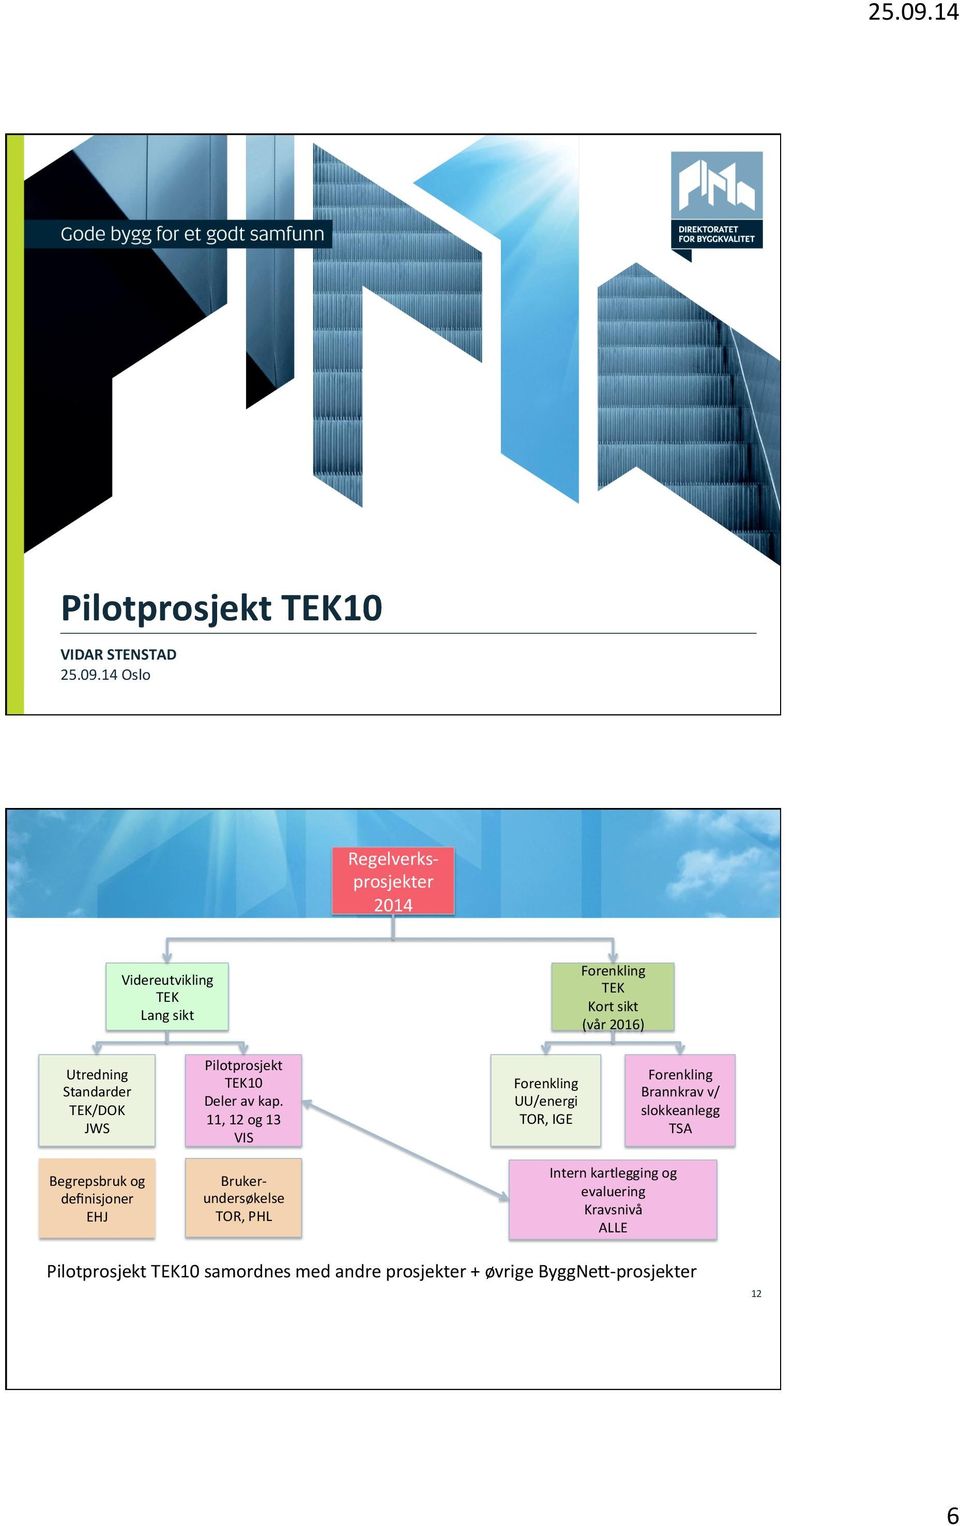 TEK/DOK JWS Pilotprosjekt TEK10 Deler av kap.